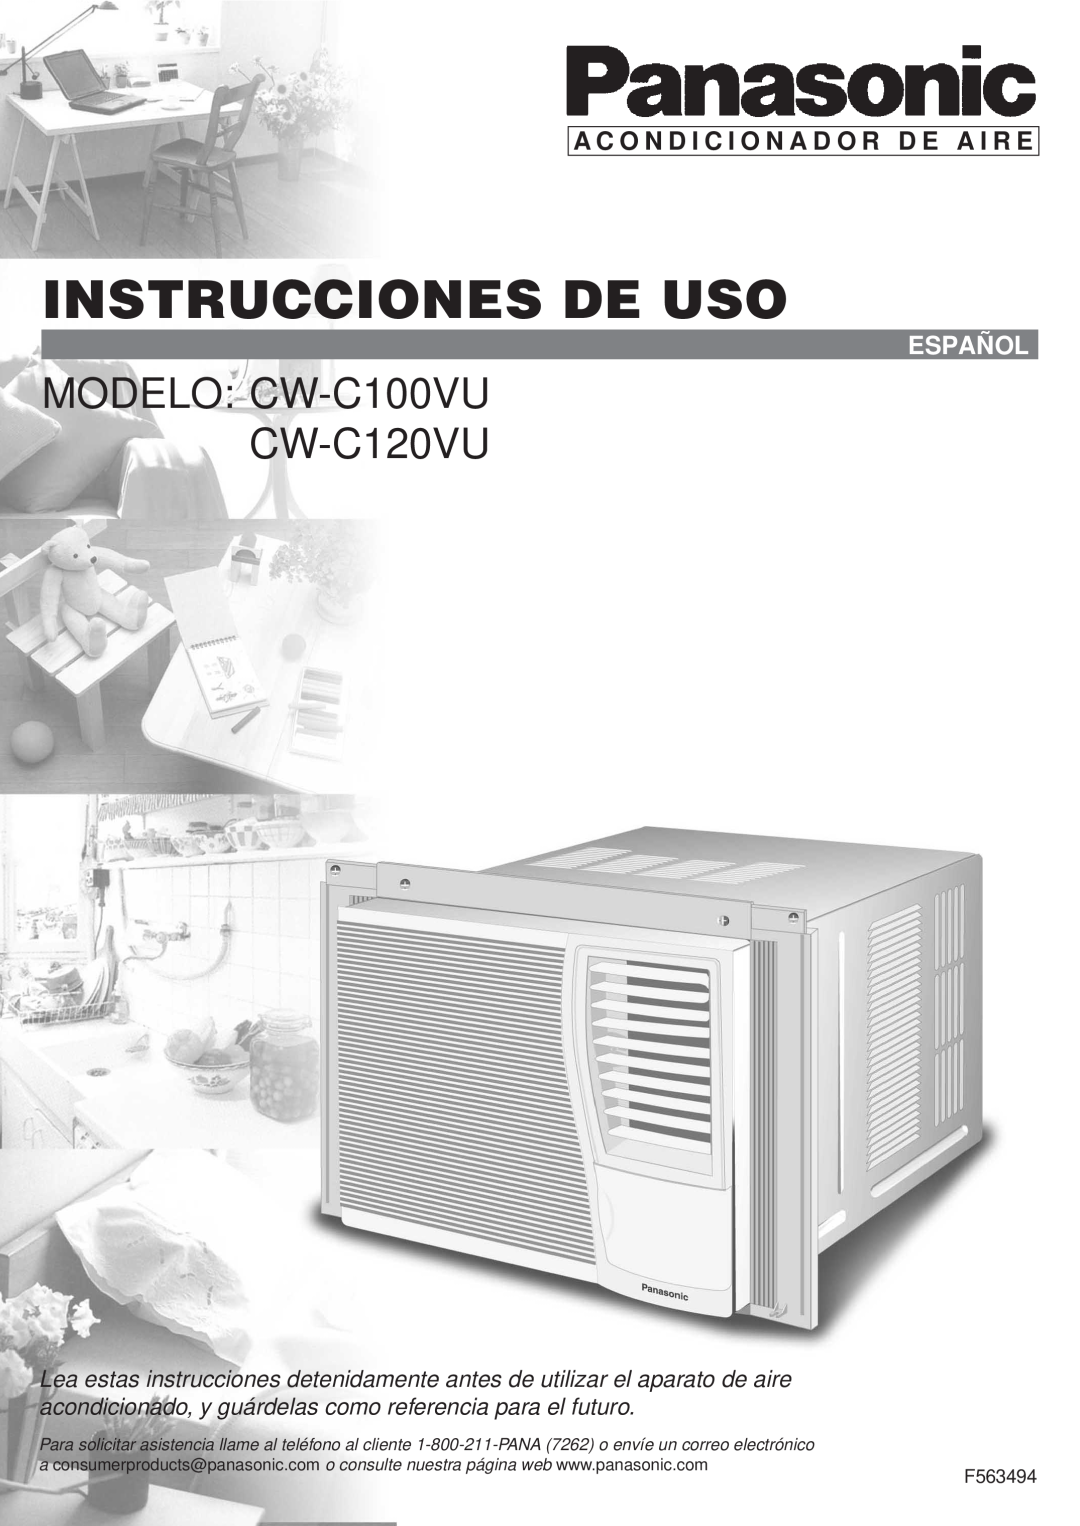 Panasonic Instrucciones De Uso, MODELO CW-C100VU CW-C120VU, A C O N D I C I O N A D O R D E A I R E, Español, F563494 